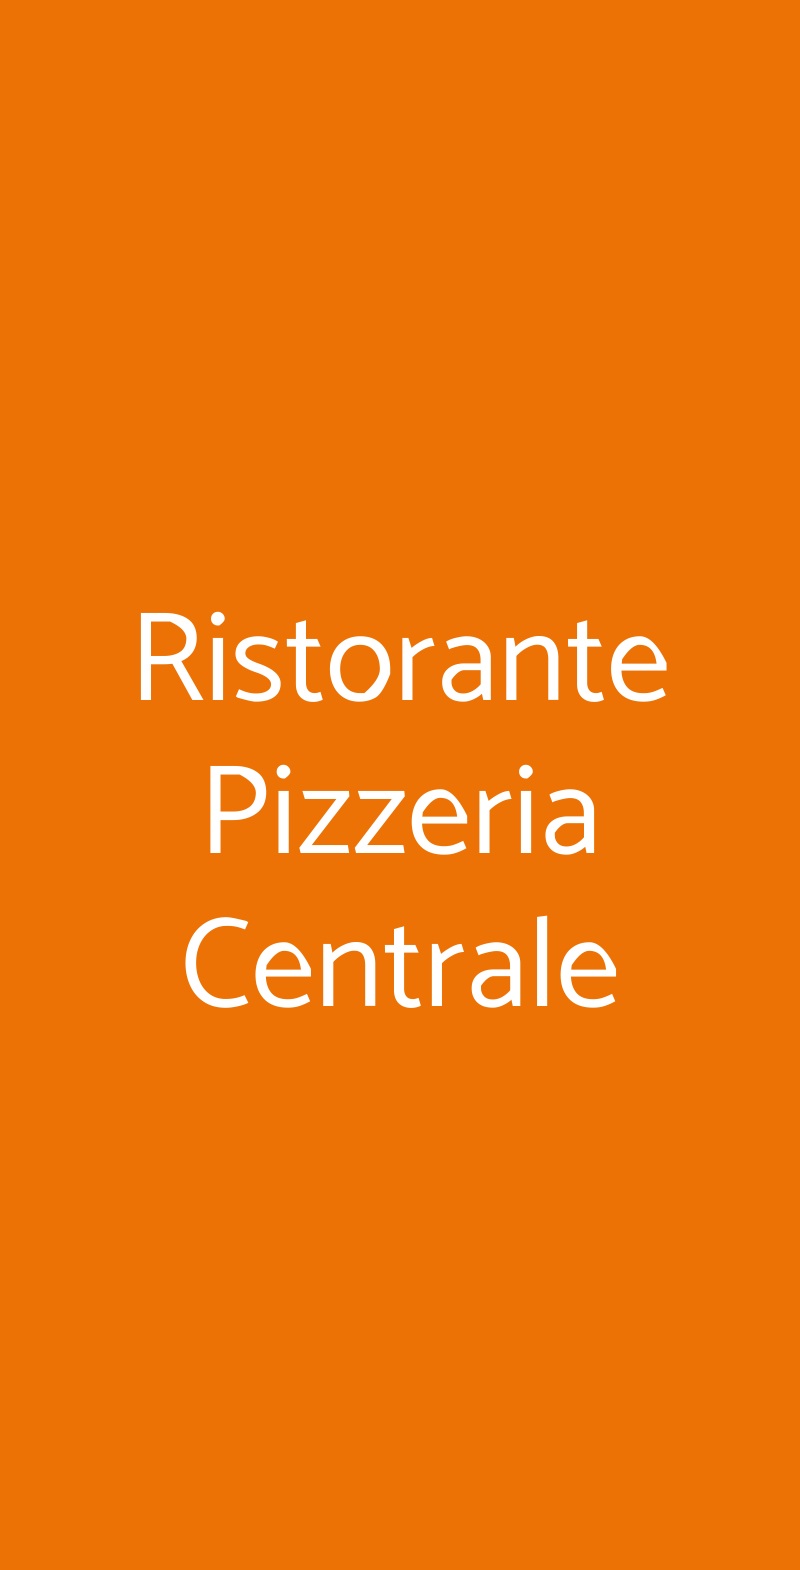 Ristorante Pizzeria Centrale Flavon menù 1 pagina